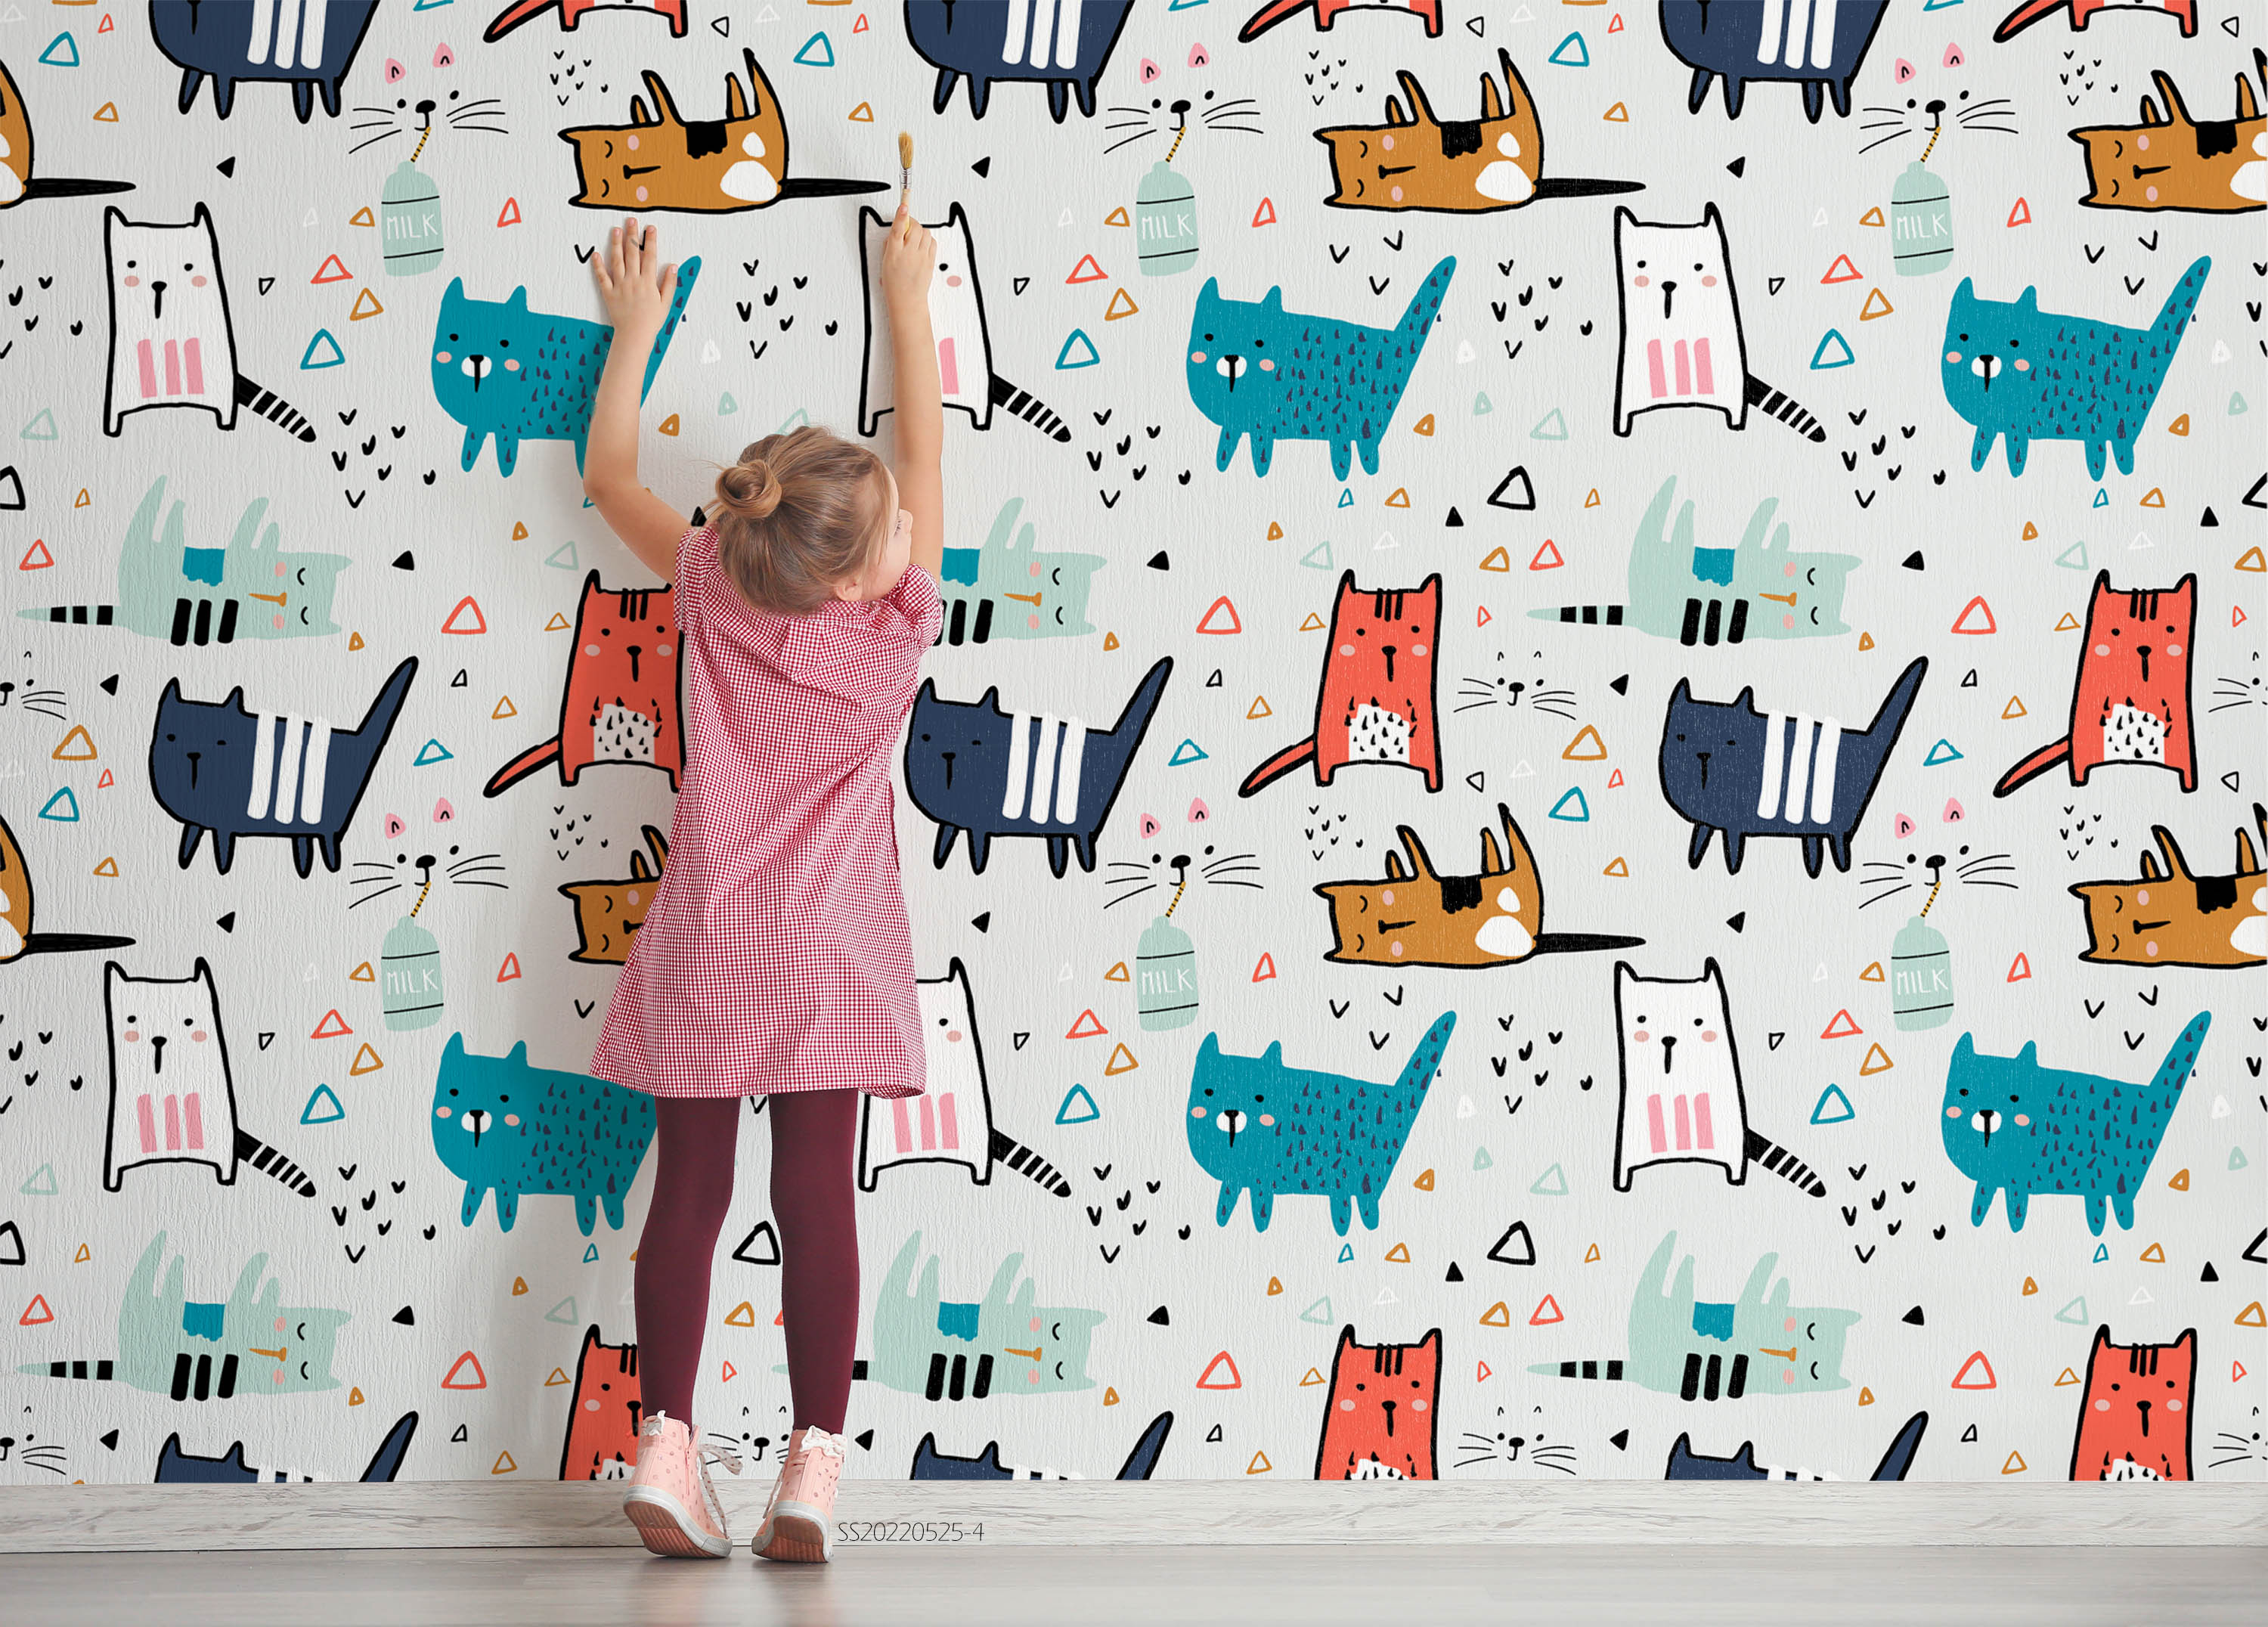 3D Cartoon Cute Cat Set Wall Mural Wallpaper GD 626- Jess Art Decoration